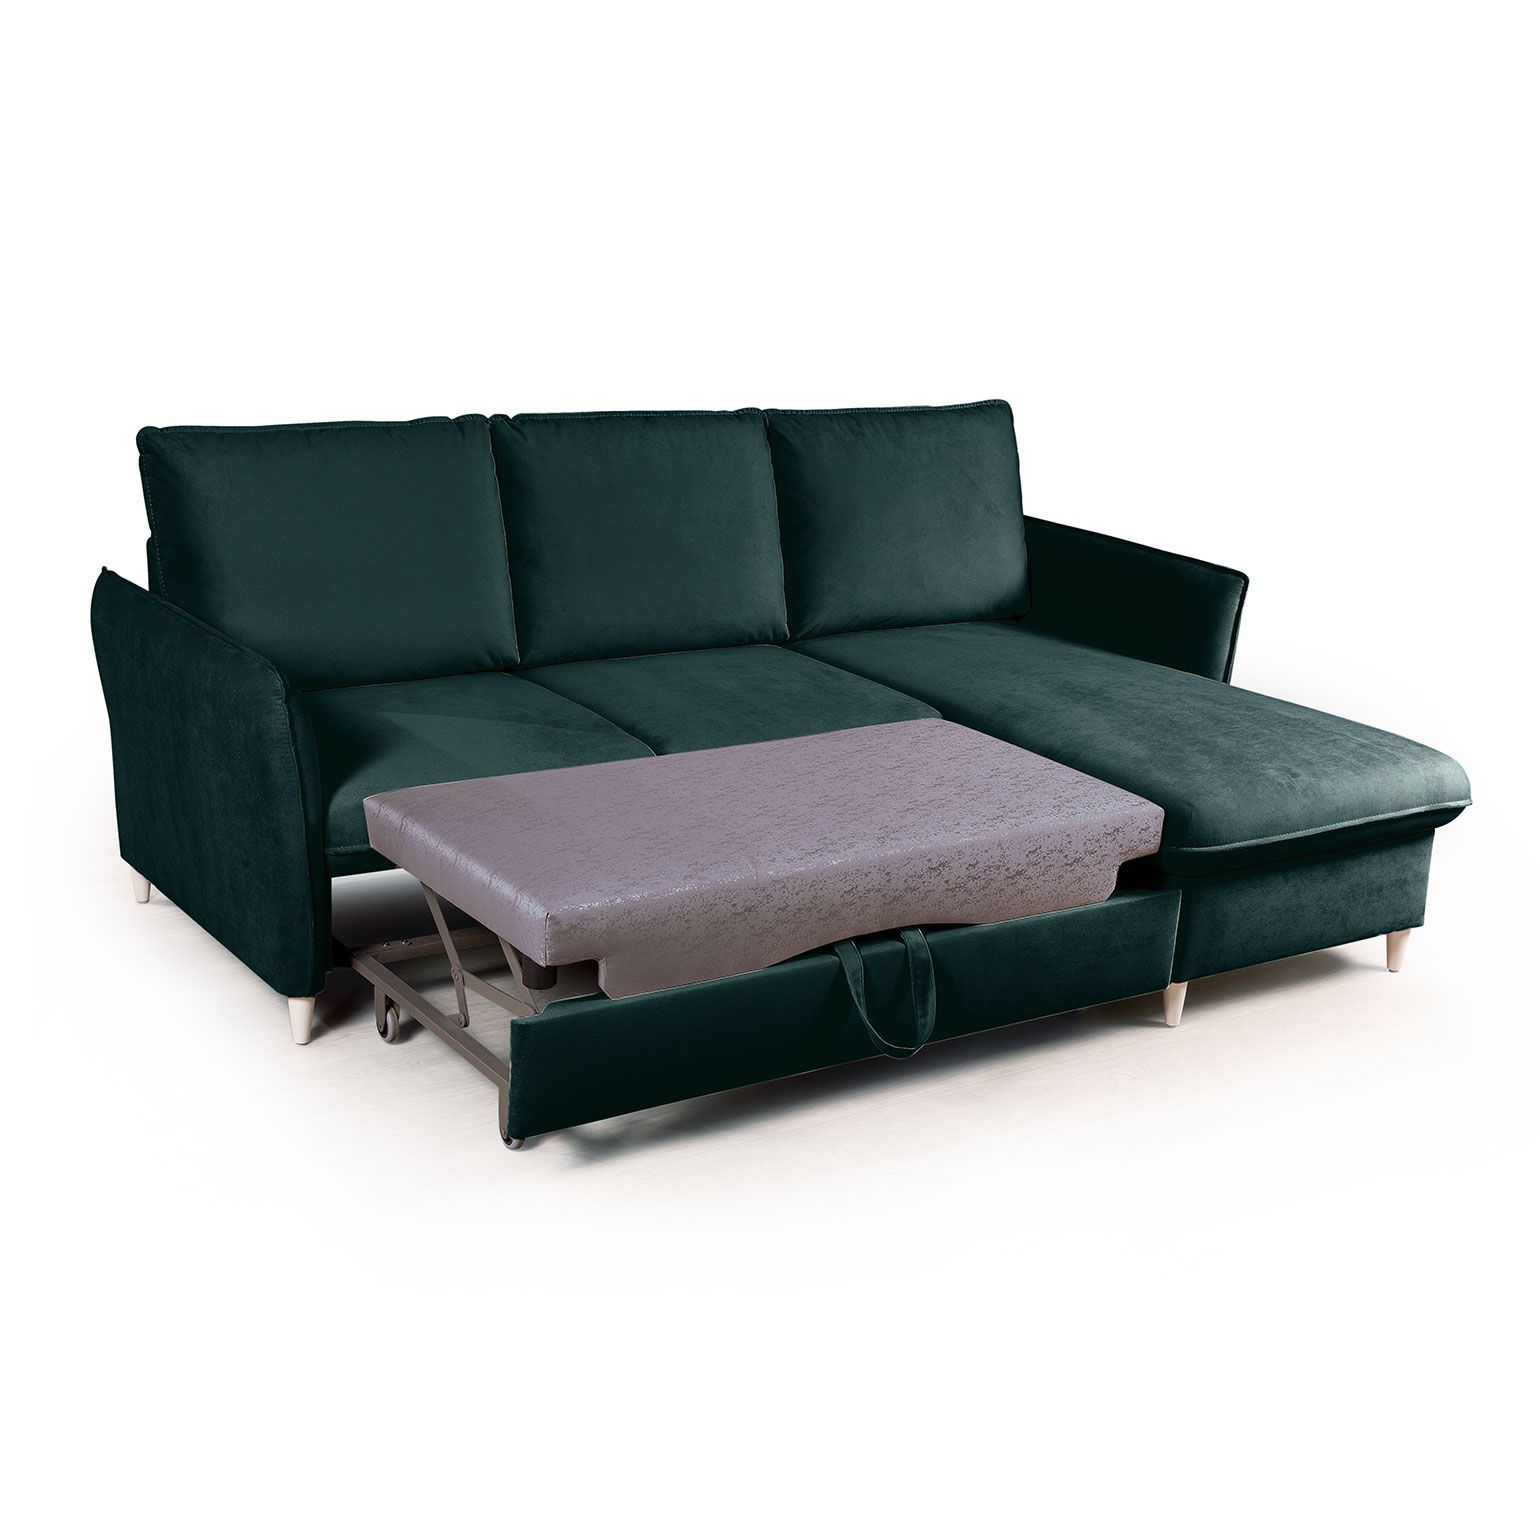 Hans диван-кровать с шезлонгом велюр зеленый